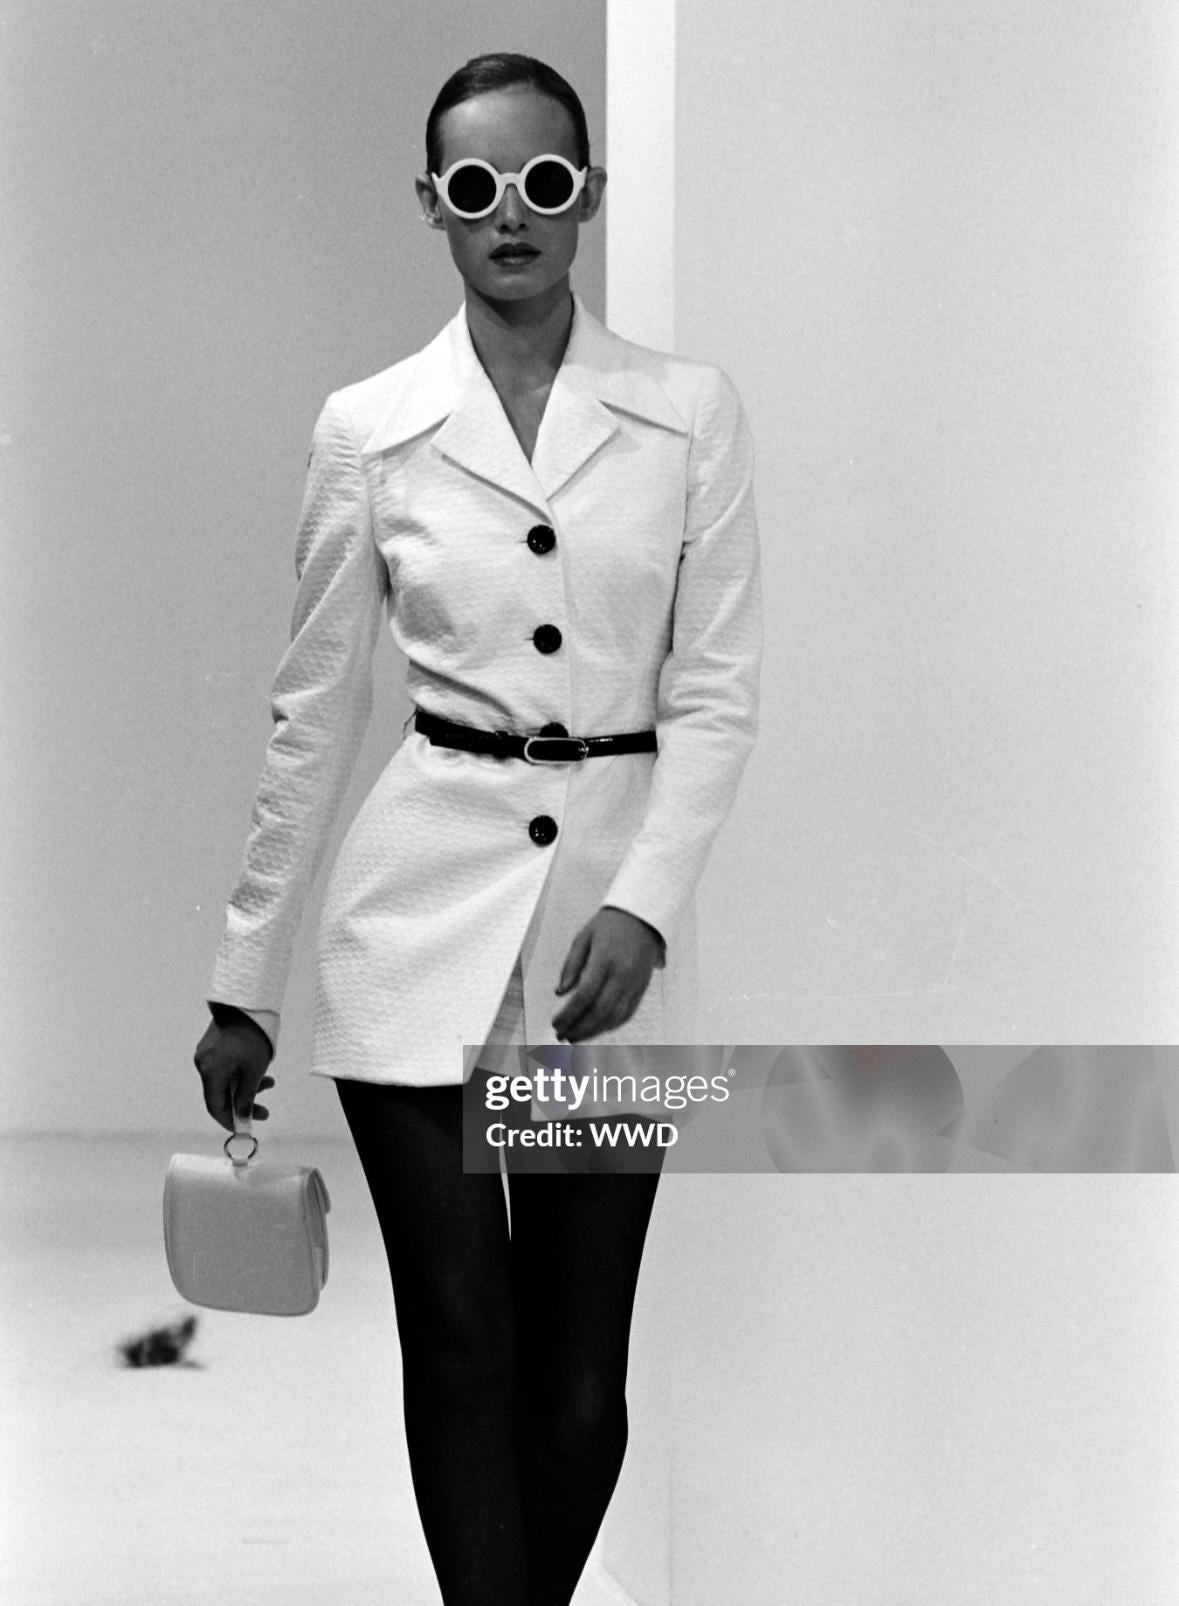 Issue de la collection printemps/été 1995 de Dolce & Gabbana, la version longue de ce tailleur mini-jupe en maille gaufrée blanche a fait ses débuts sur le podium de la saison, portée par Amber Valletta. Ce costume trois pièces comprend un blazer